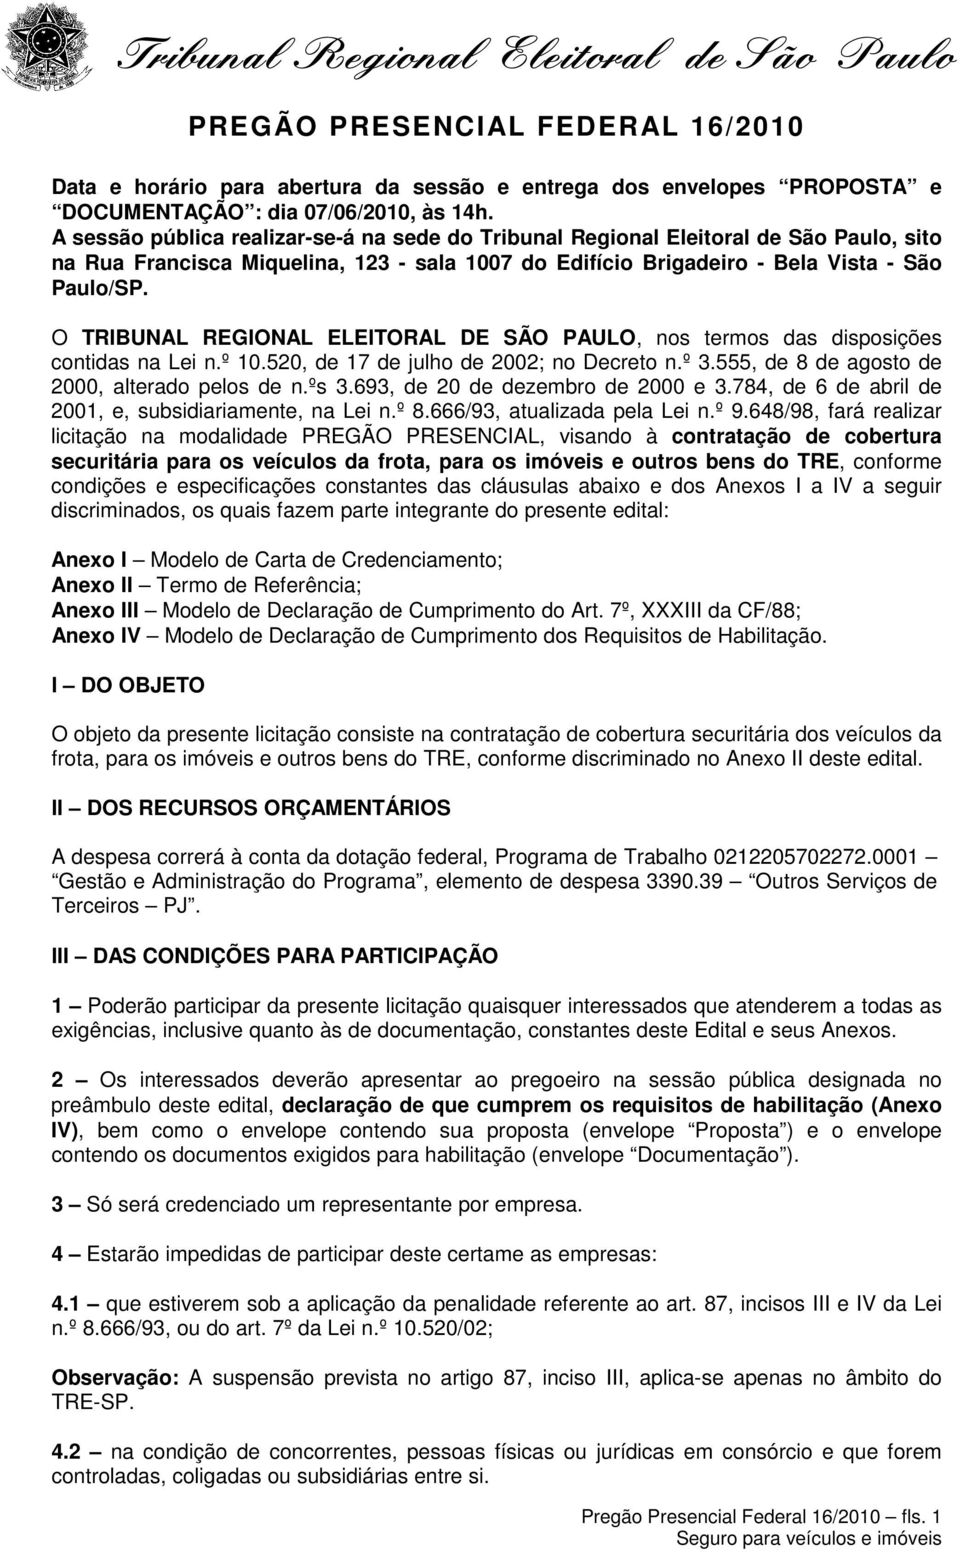 O TRIBUNAL REGIONAL ELEITORAL DE SÃO PAULO, nos termos das disposições contidas na Lei n.º 10.520, de 17 de julho de 2002; no Decreto n.º 3.555, de 8 de agosto de 2000, alterado pelos de n.ºs 3.